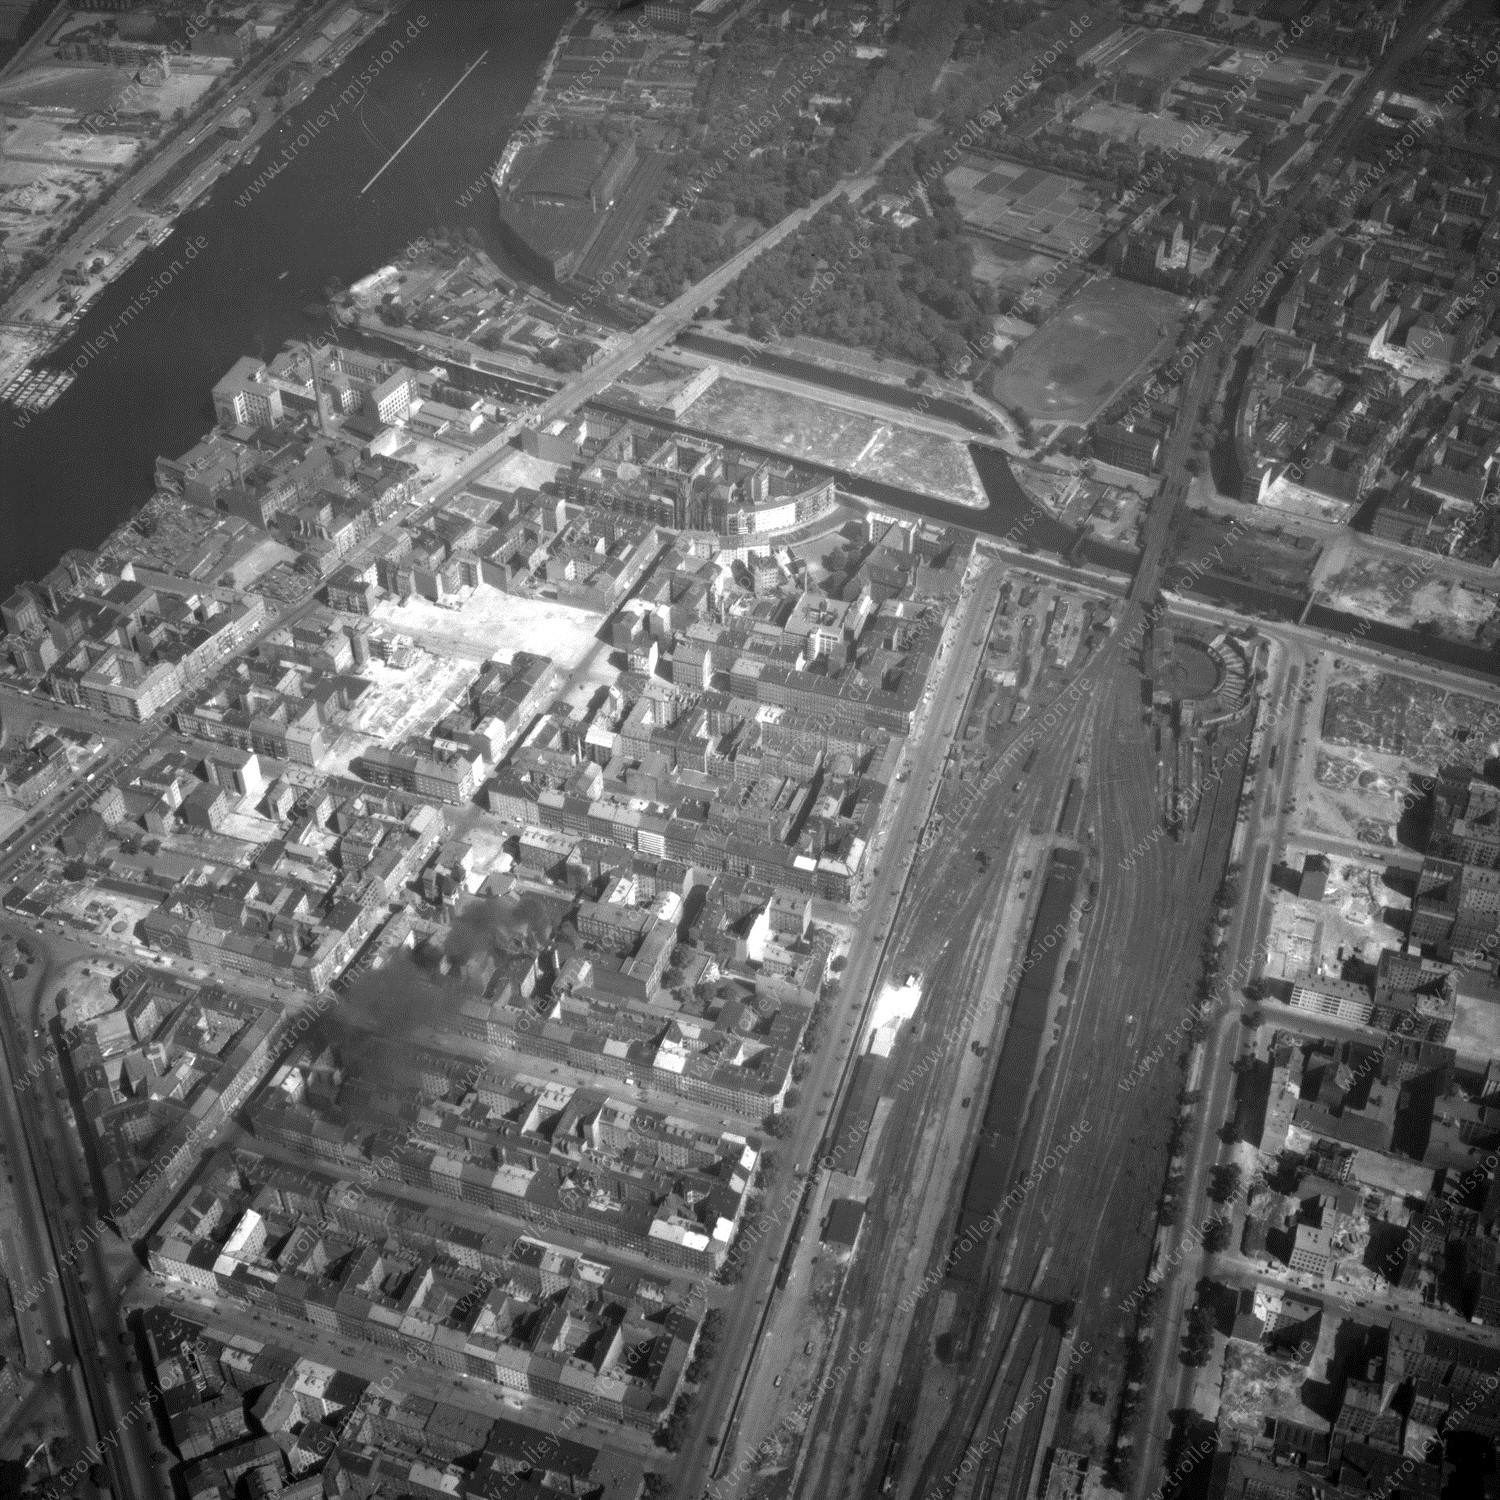 Alte Fotos und Luftbilder von Berlin - Luftbildaufnahme Nr. 05 - Historische Luftaufnahmen von West-Berlin aus dem Jahr 1954 - Flugstrecke November